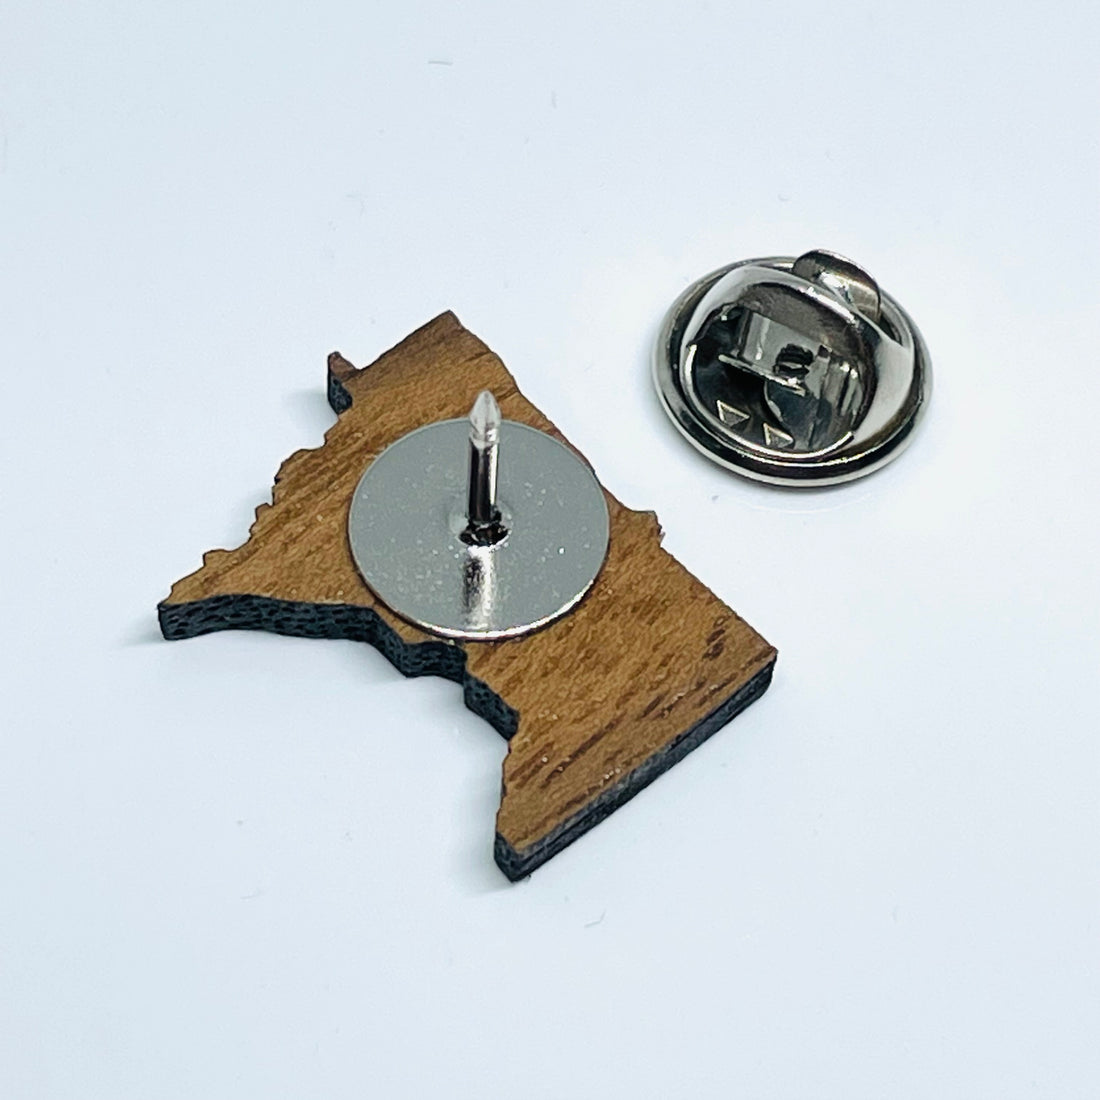 Laser Cut Minnesota Walnut - Lapel Pin